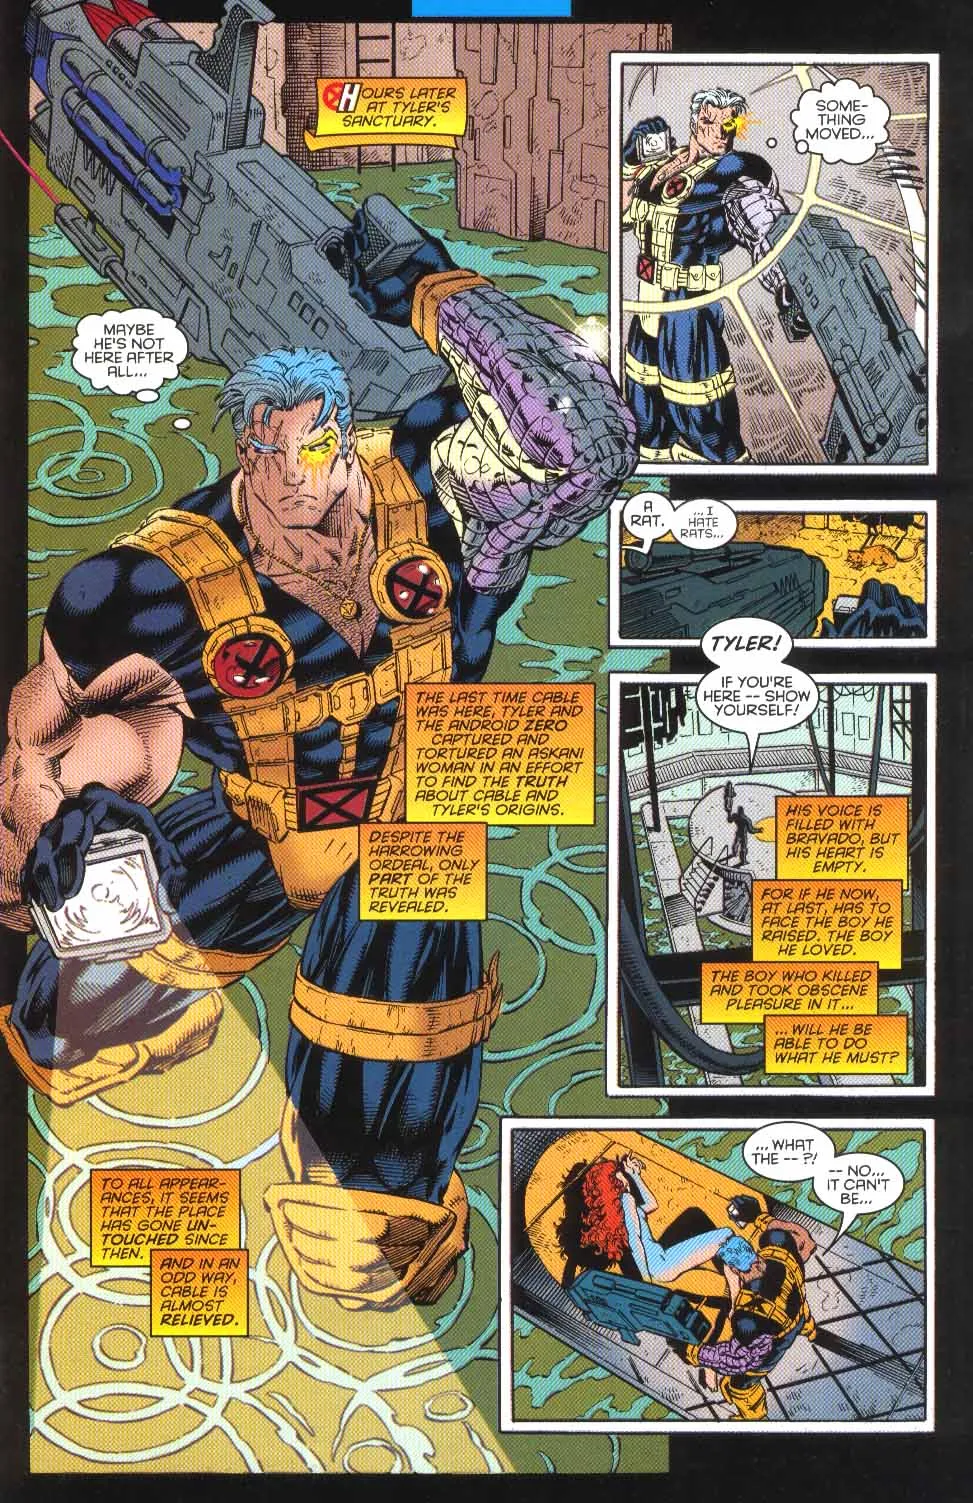 Cable hält eine Waffe in Marvel Comics.  Dieses Bild ist Teil eines Artikels über 7 obskure Momente in der Marvel-Geschichte, die in Videospielen verewigt wurden.